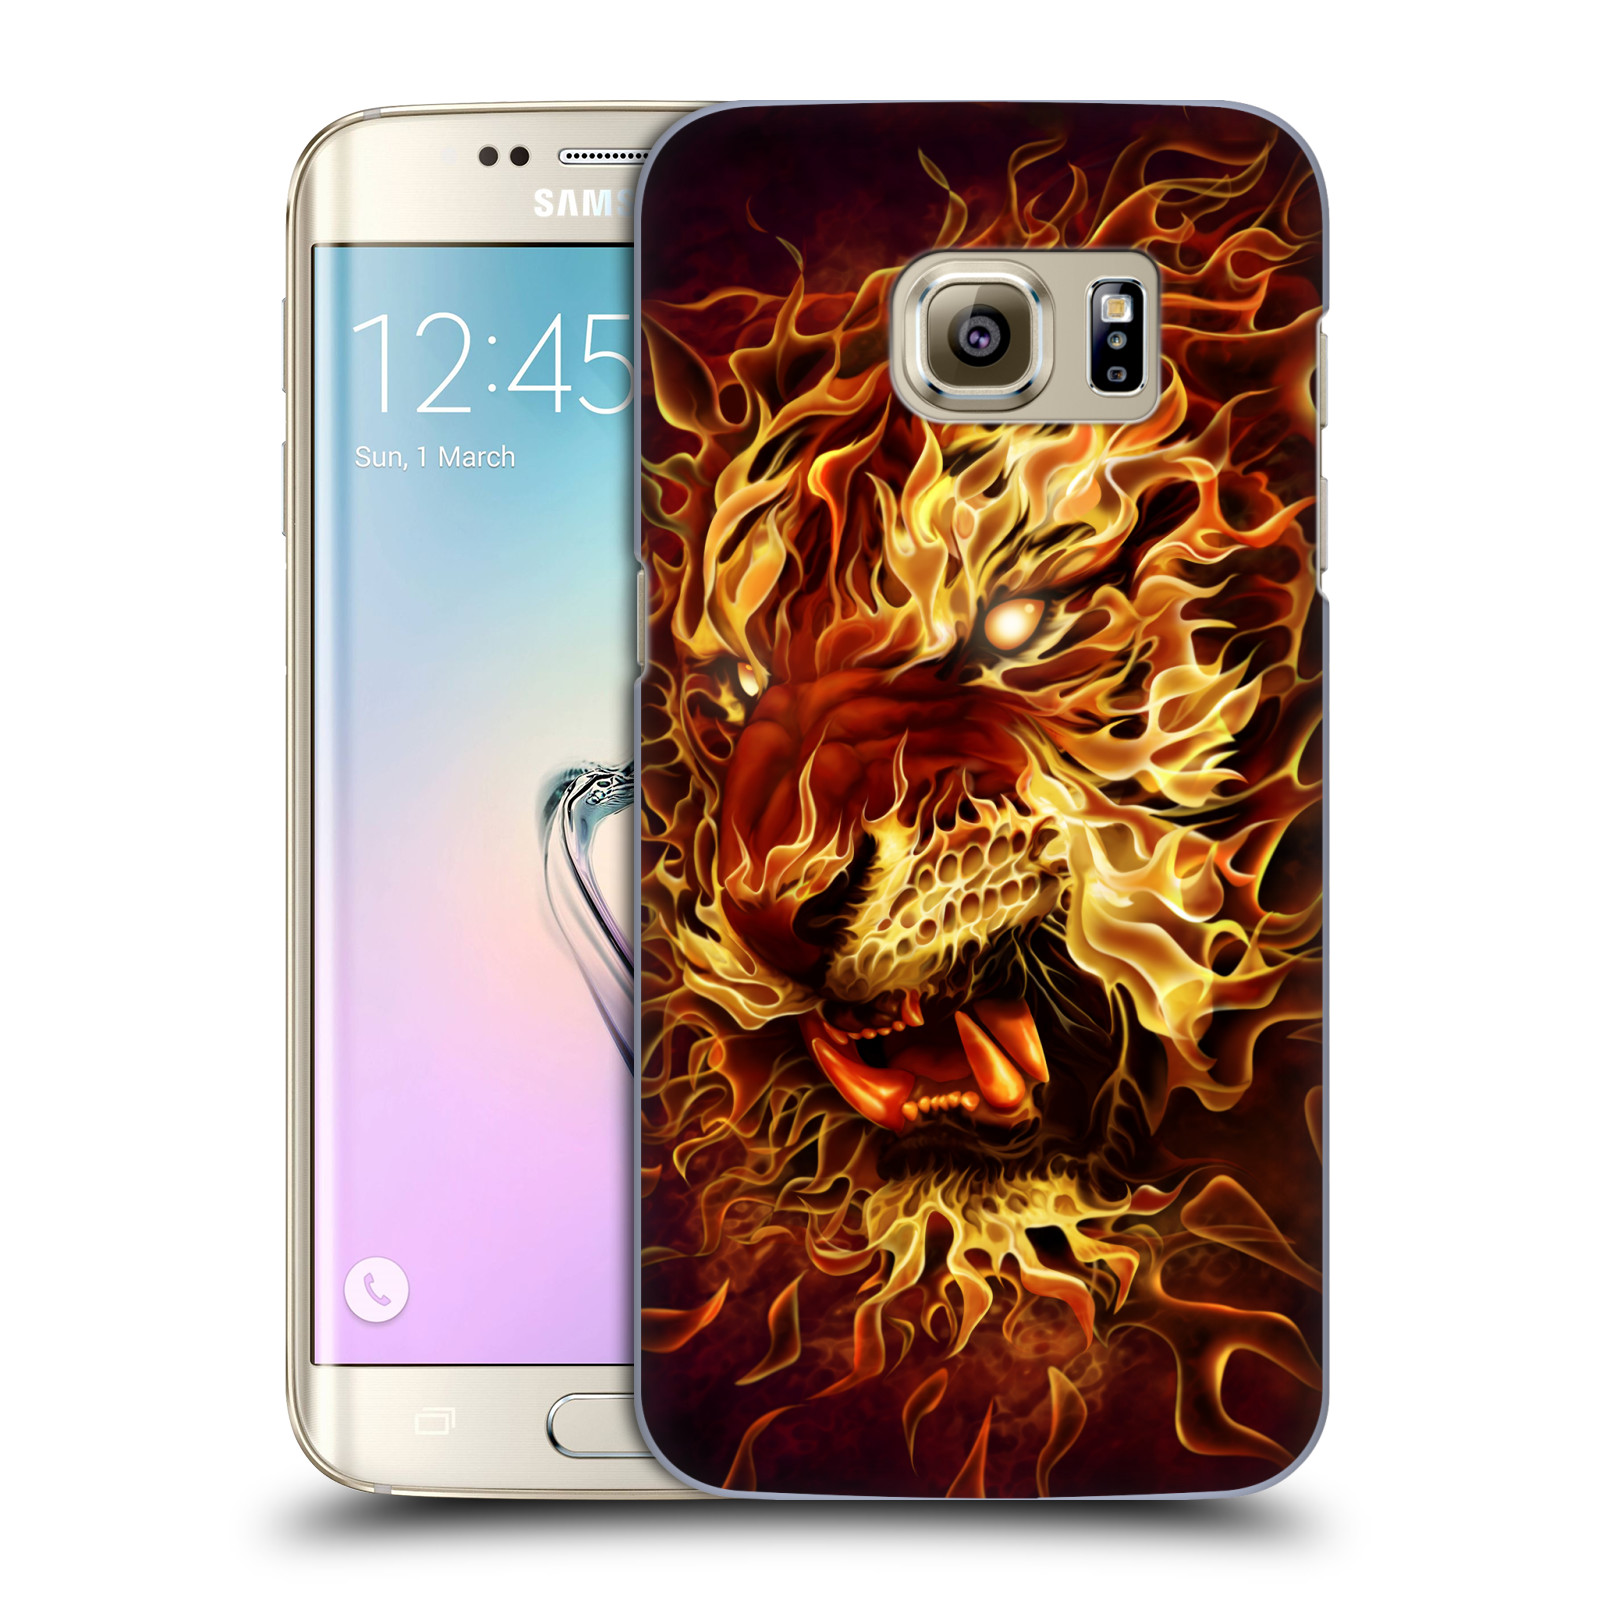 Pouzdro na mobil Samsung Galaxy S7 EDGE - HEAD CASE - Fantasy kresby Tom Wood - Ohnivý tygr